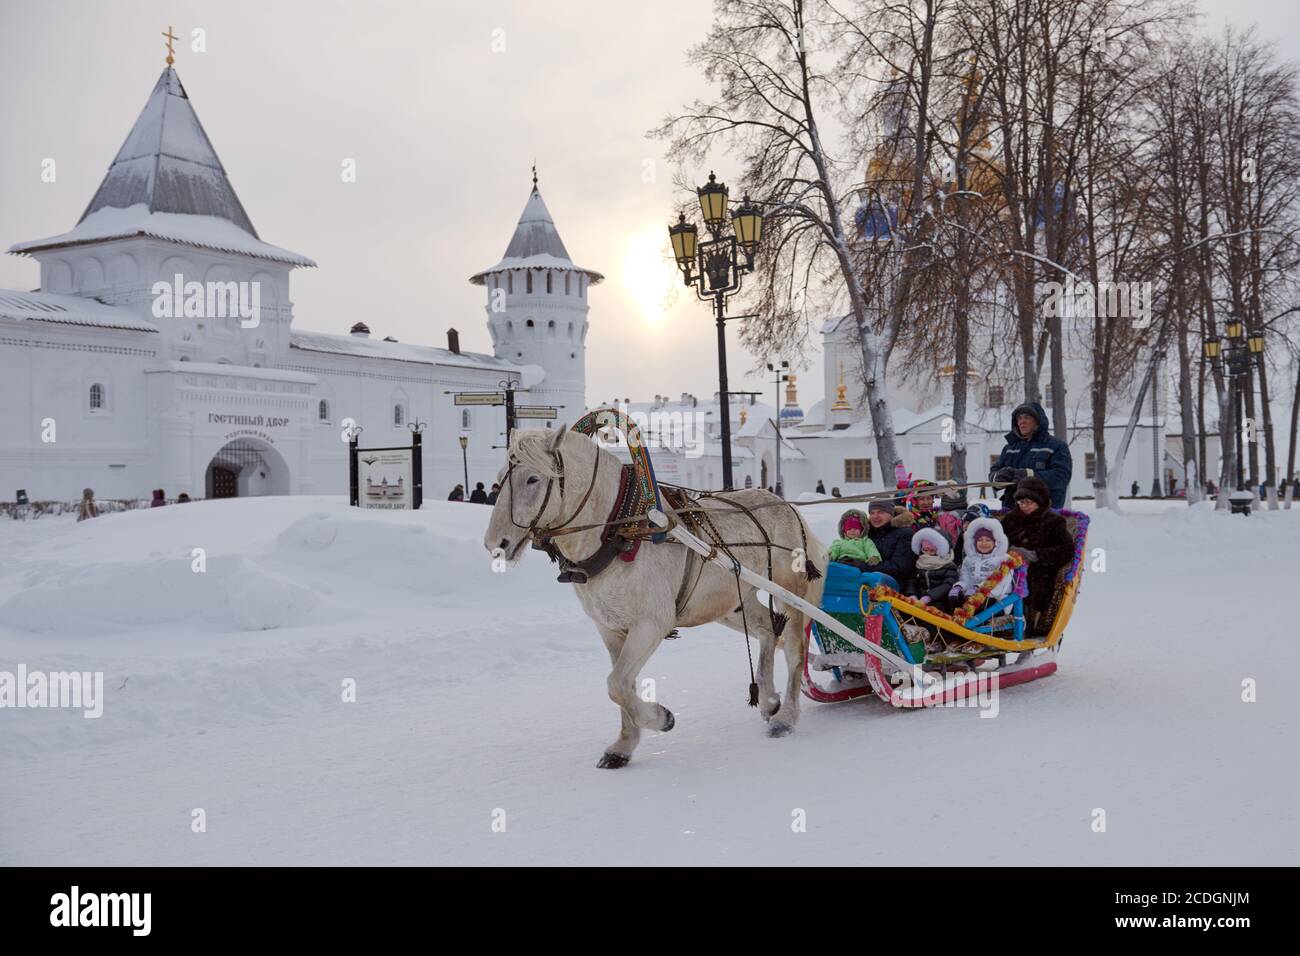 Christmas festivities in Tobolsk, Russia against the Tobolsk Kremlin Stock Photo